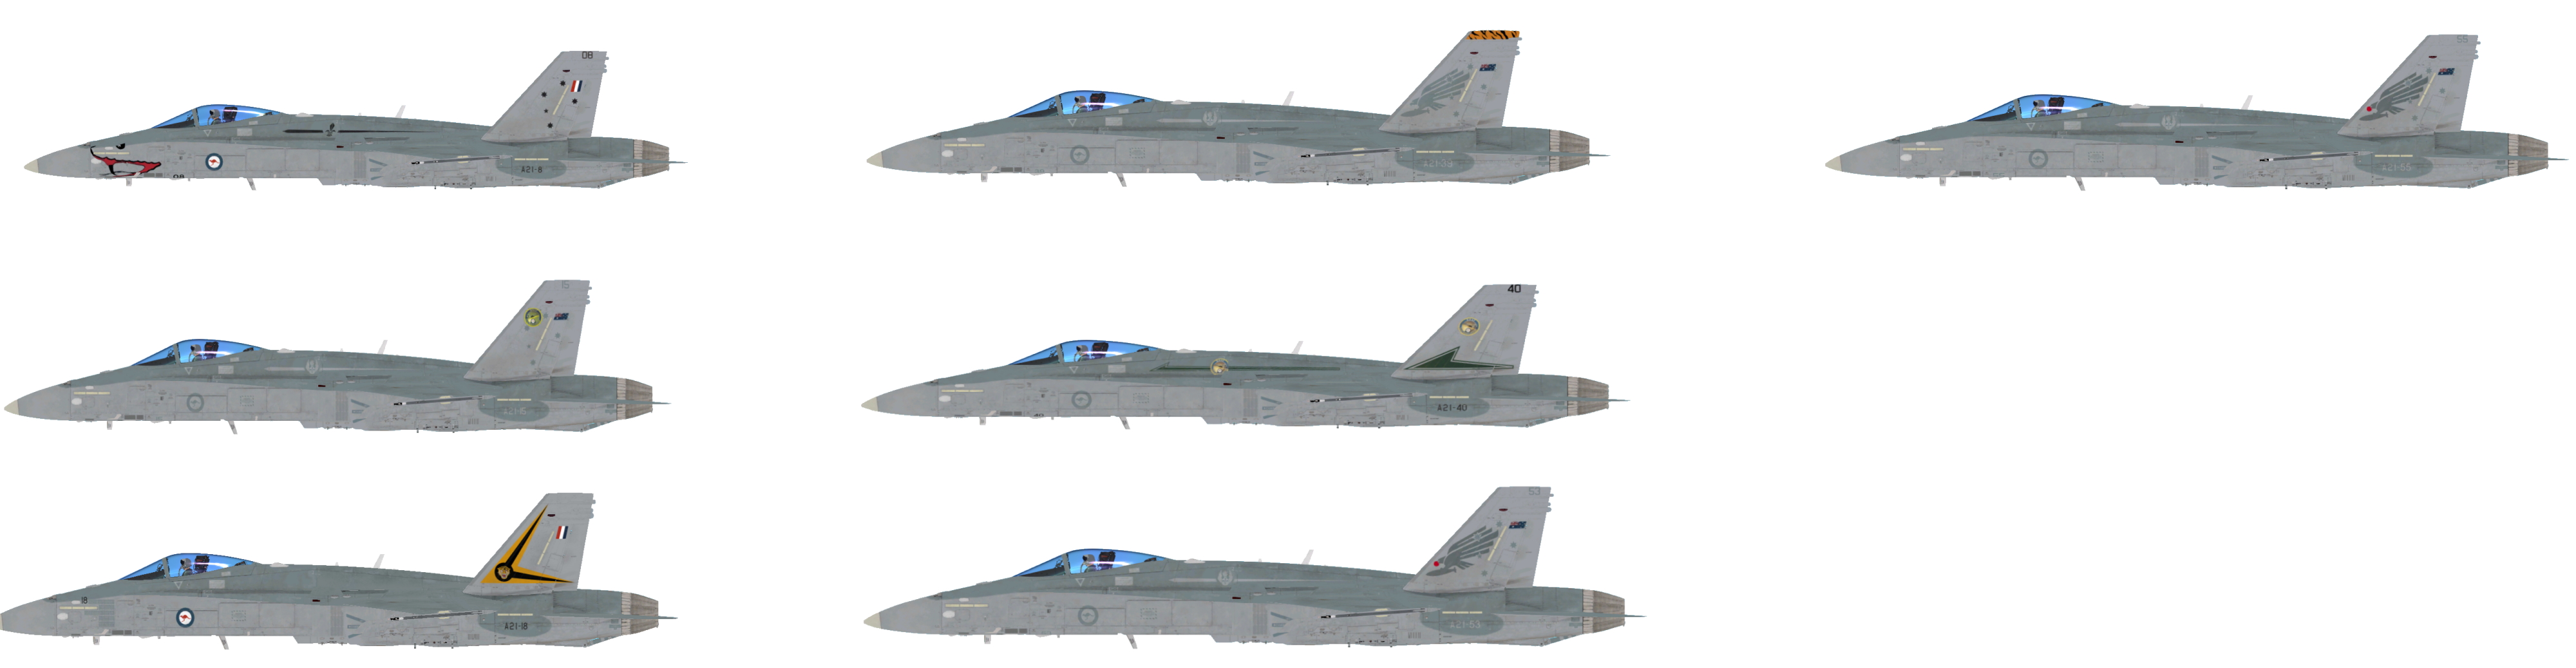 DCS: F A-18C Hornet full crack [pack]